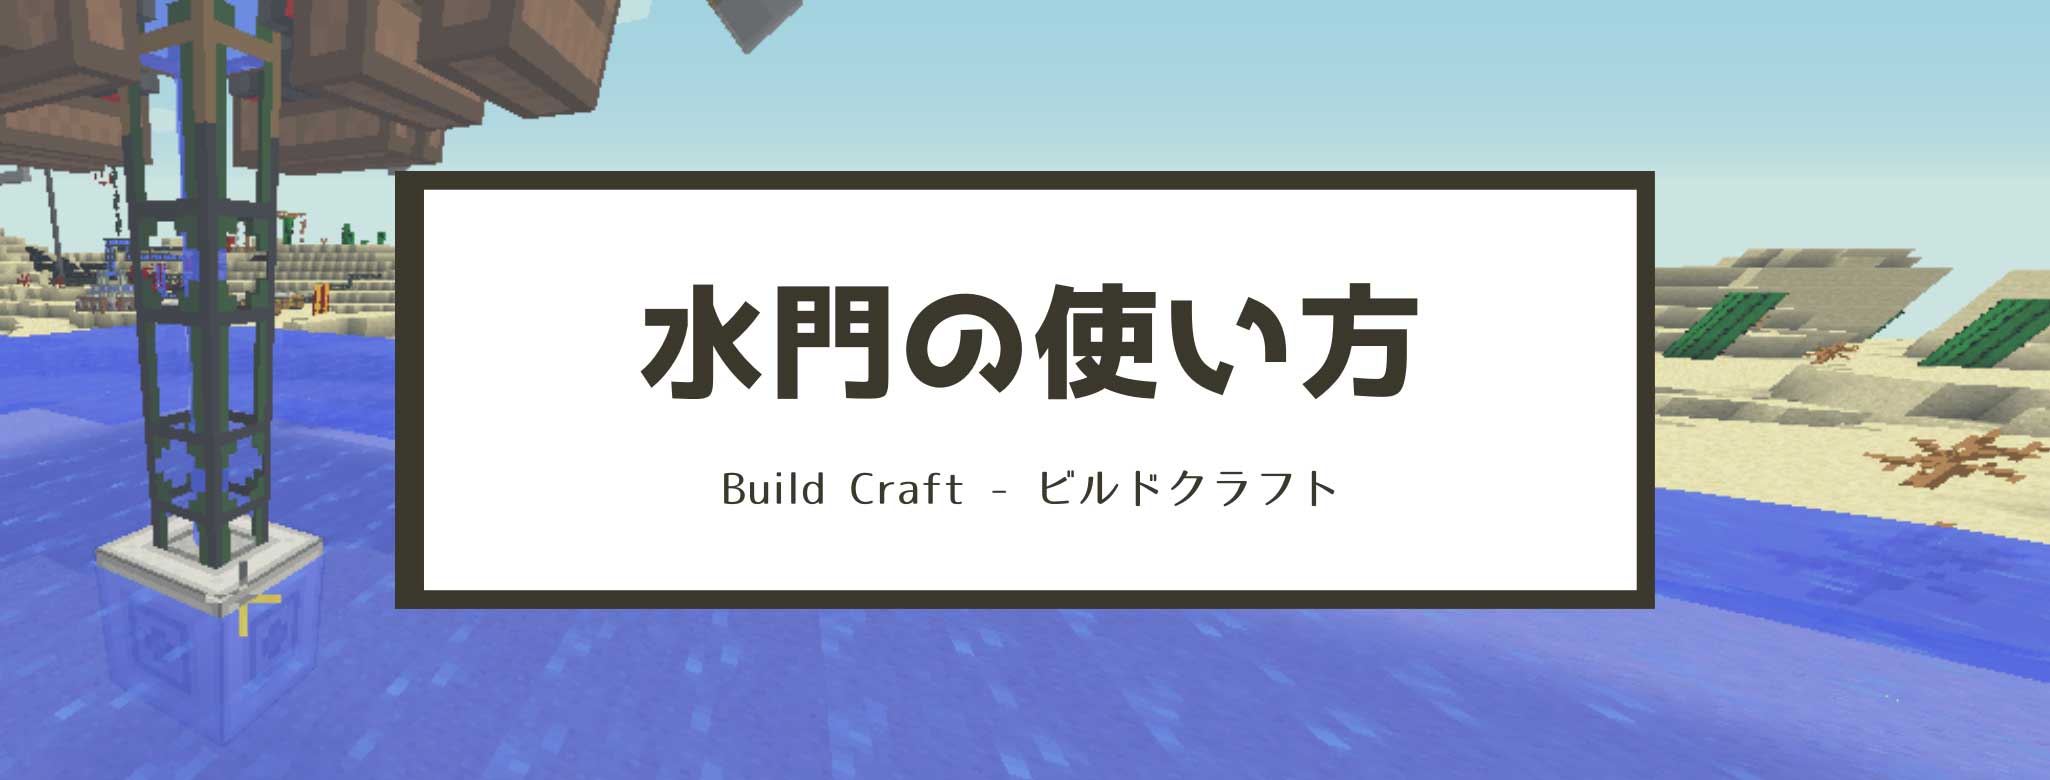 マイクラ 水門 Flood Gate の使い方と作り方 Buildcraft 脱 初心者を目指すマインクラフト